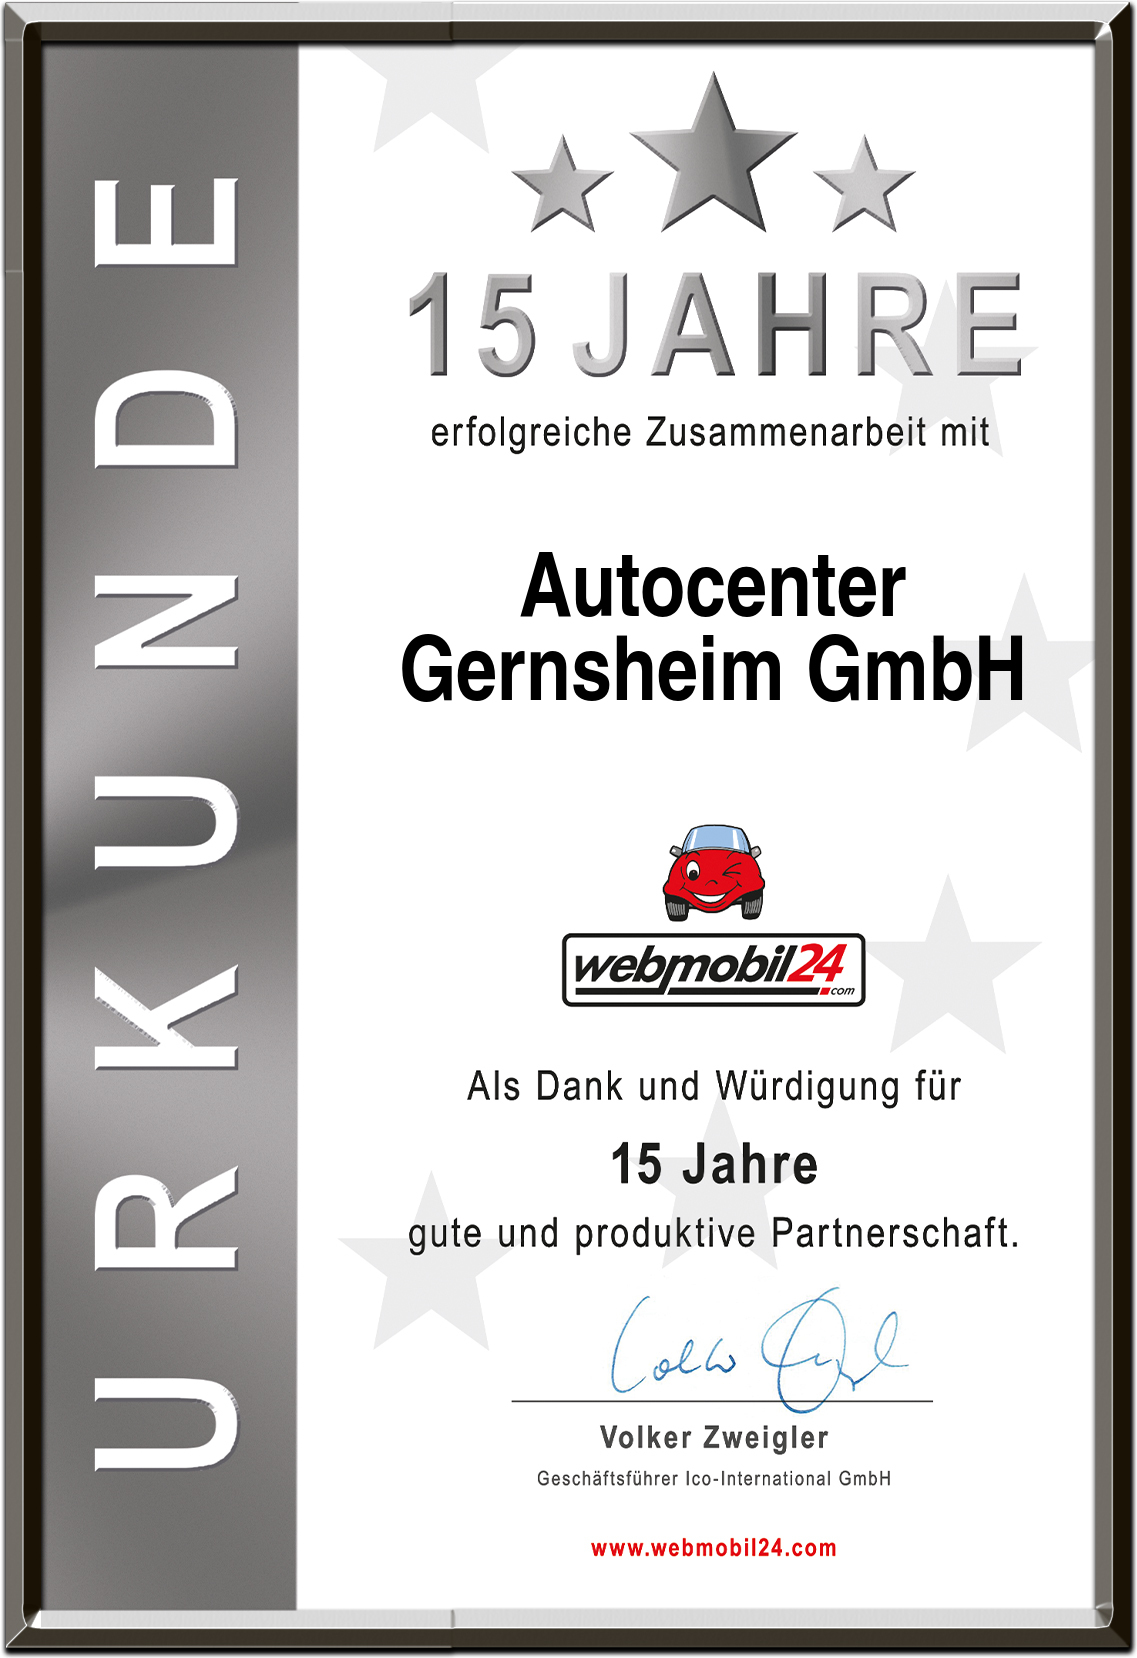 AutocenterGernsheim GmbH